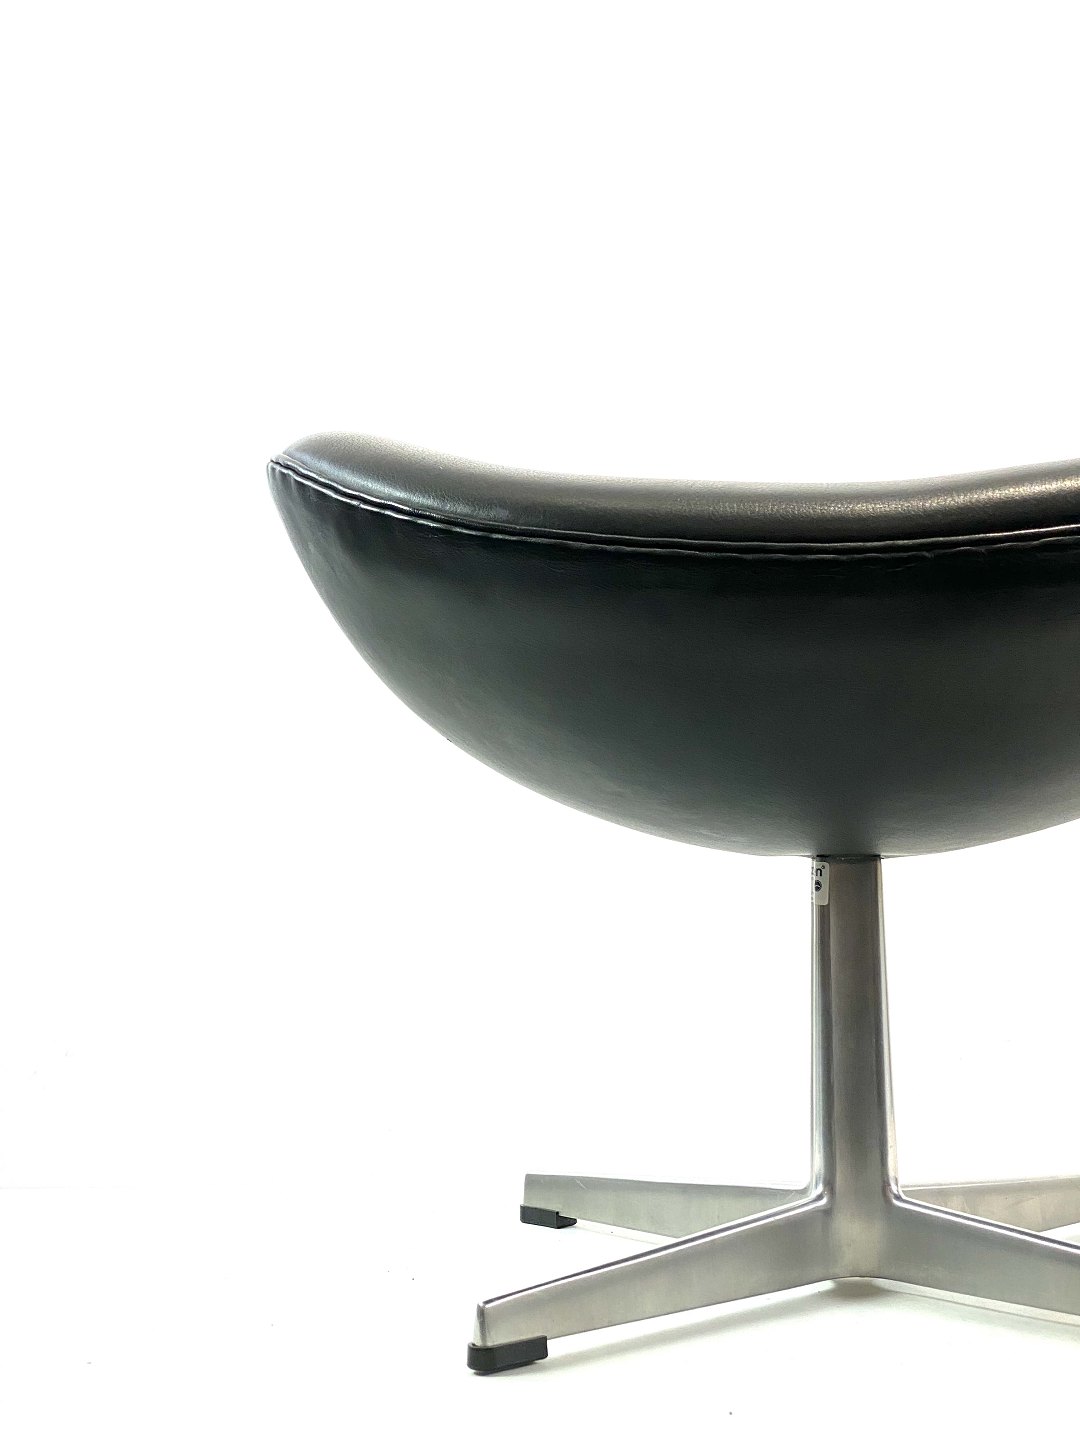 www.Antikvitet.net - Skammel til model 3127, polstret i sort elegance læder, designet af Arne Jacobsen i 1958 og f